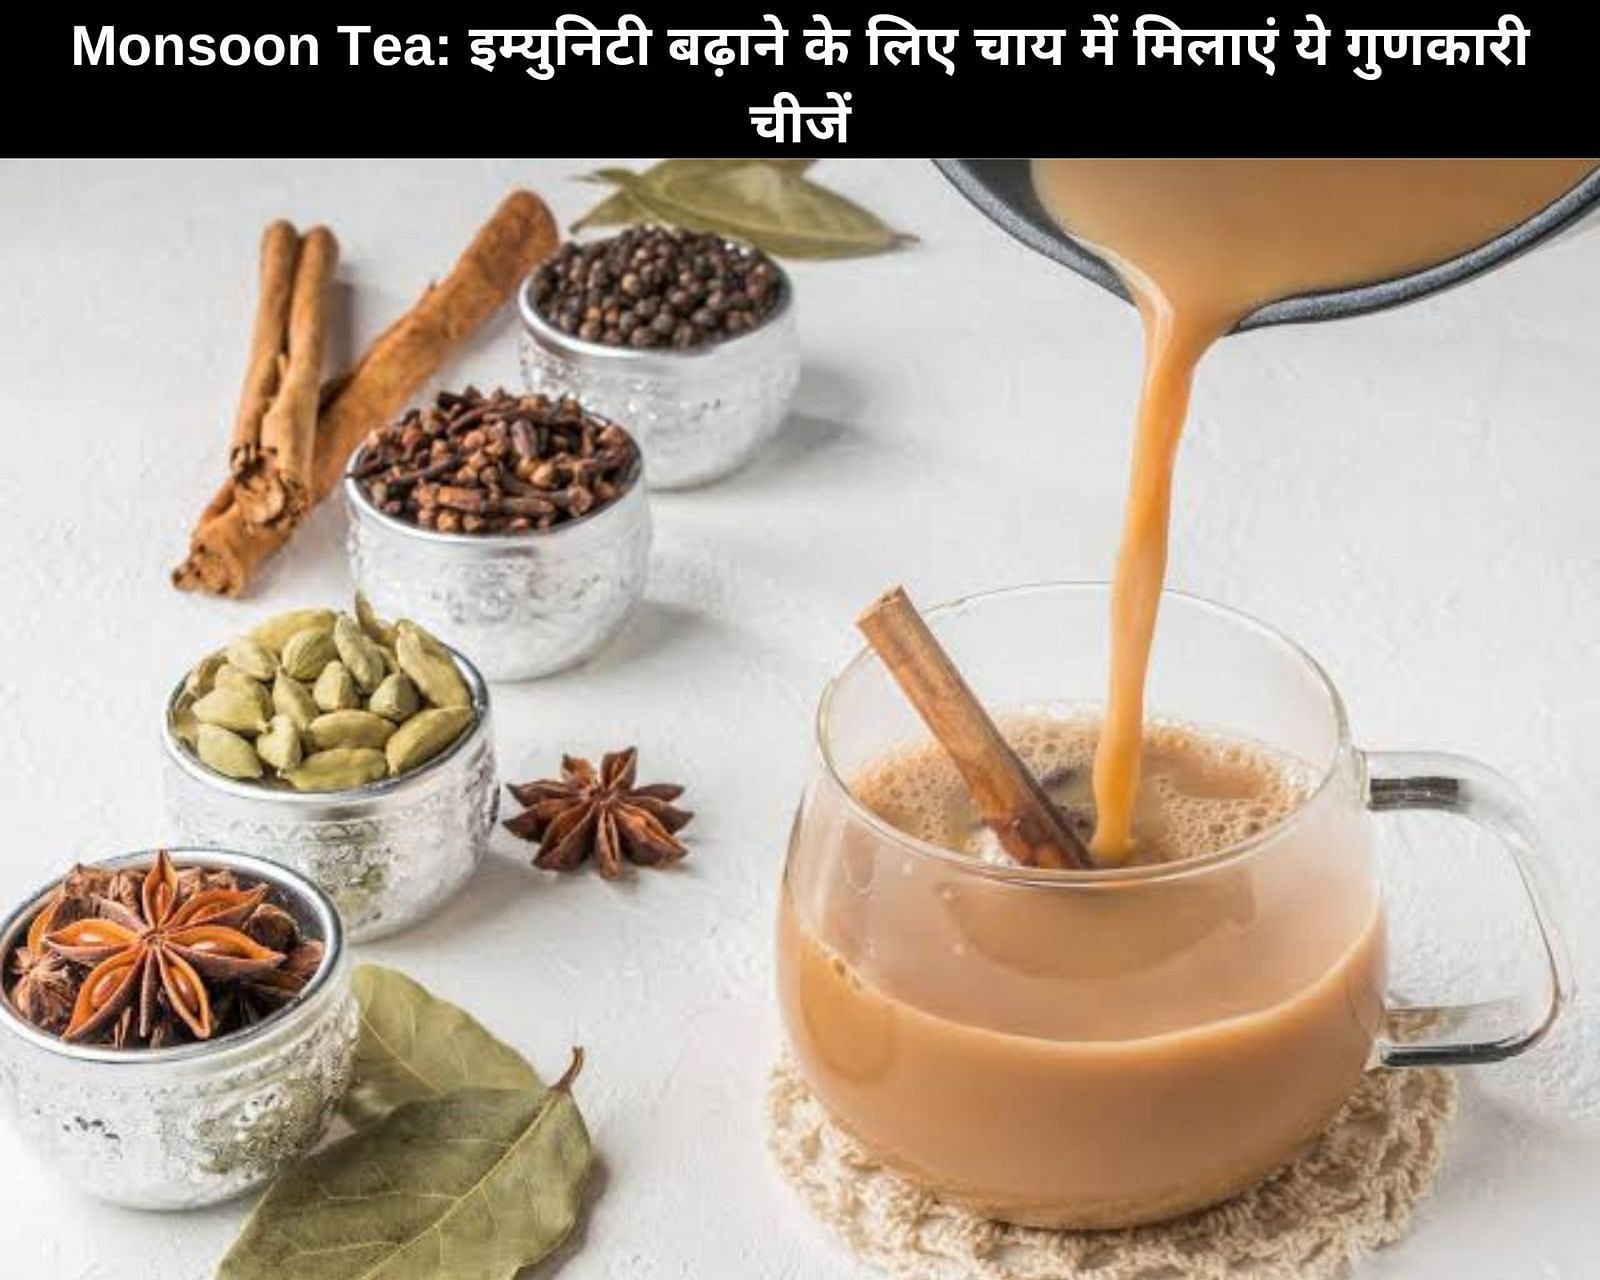 इम्युनिटी बढ़ाने के लिए चाय में मिलाएं ये गुणकारी चीजें (फोटो - sportskeeda hindi)